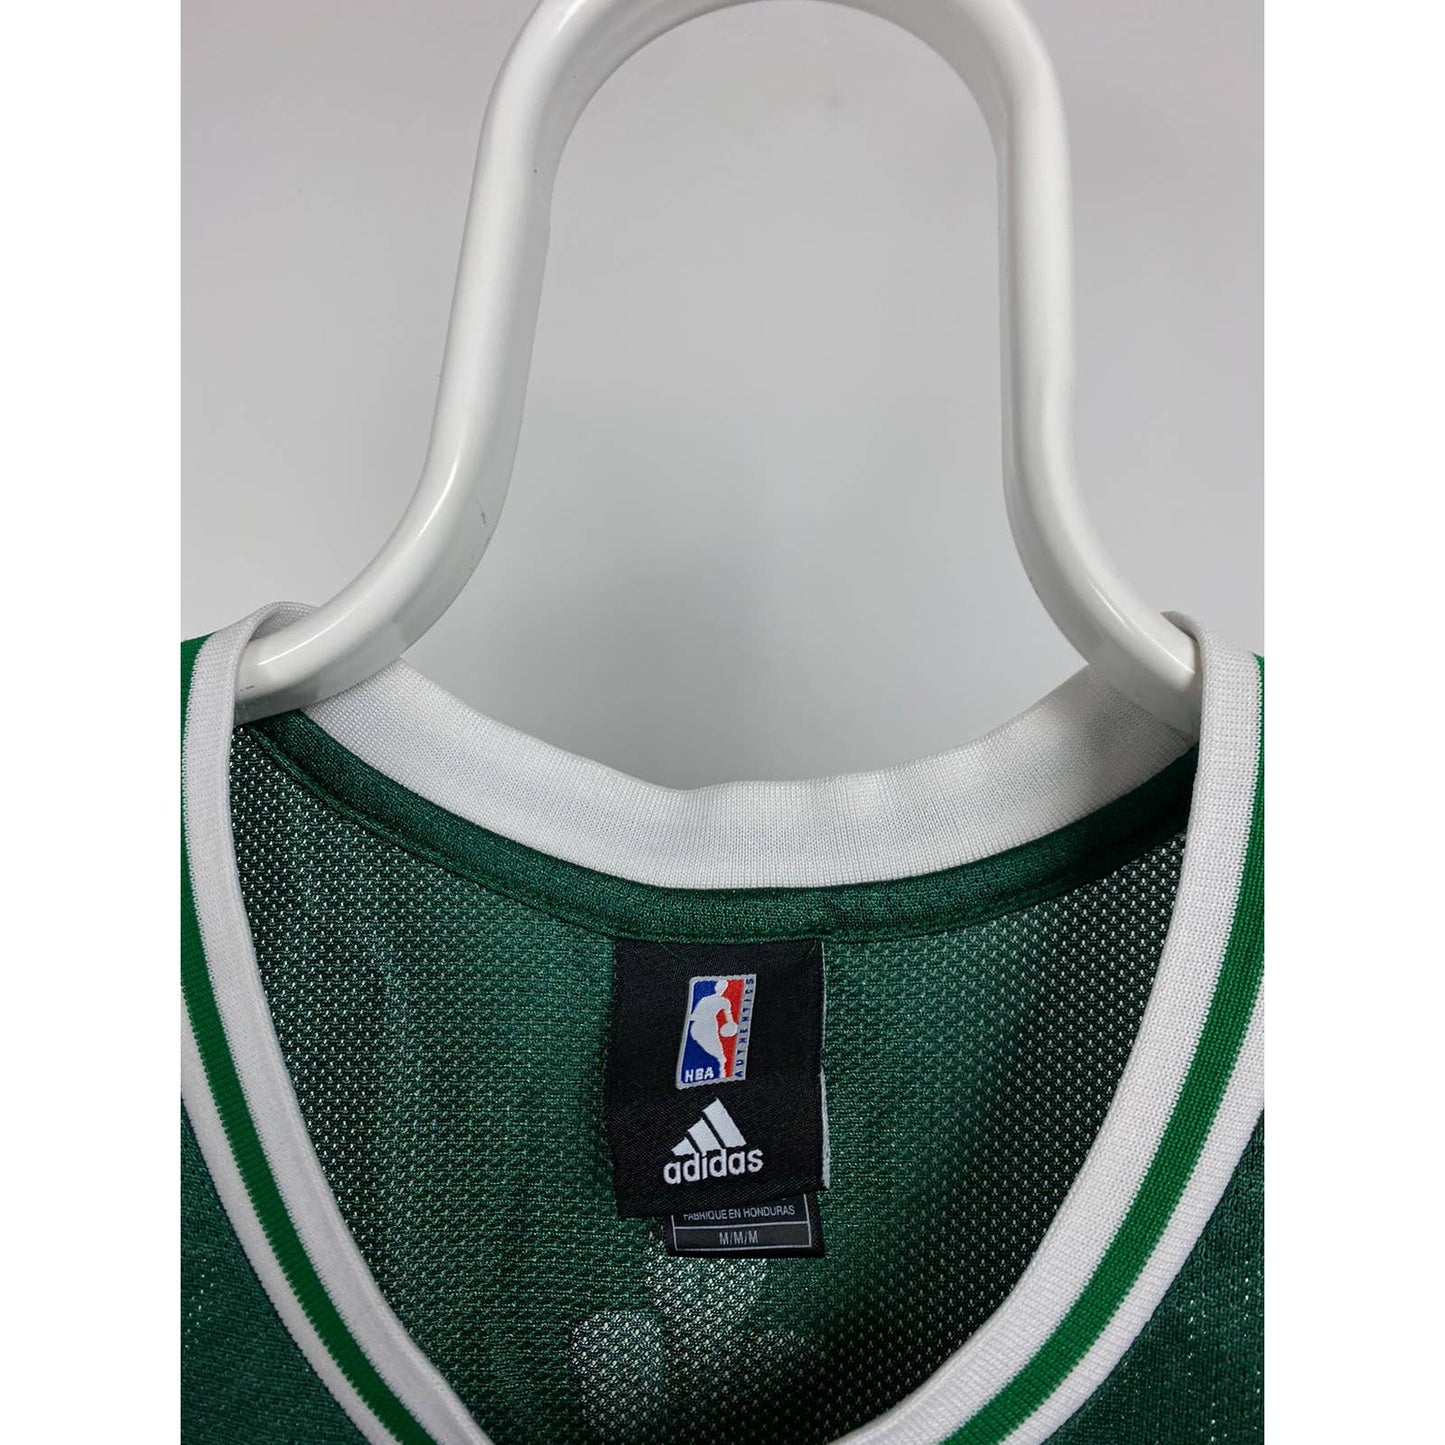 Kevin Garnett Boston Celtics vintage green jersey #5 adidas